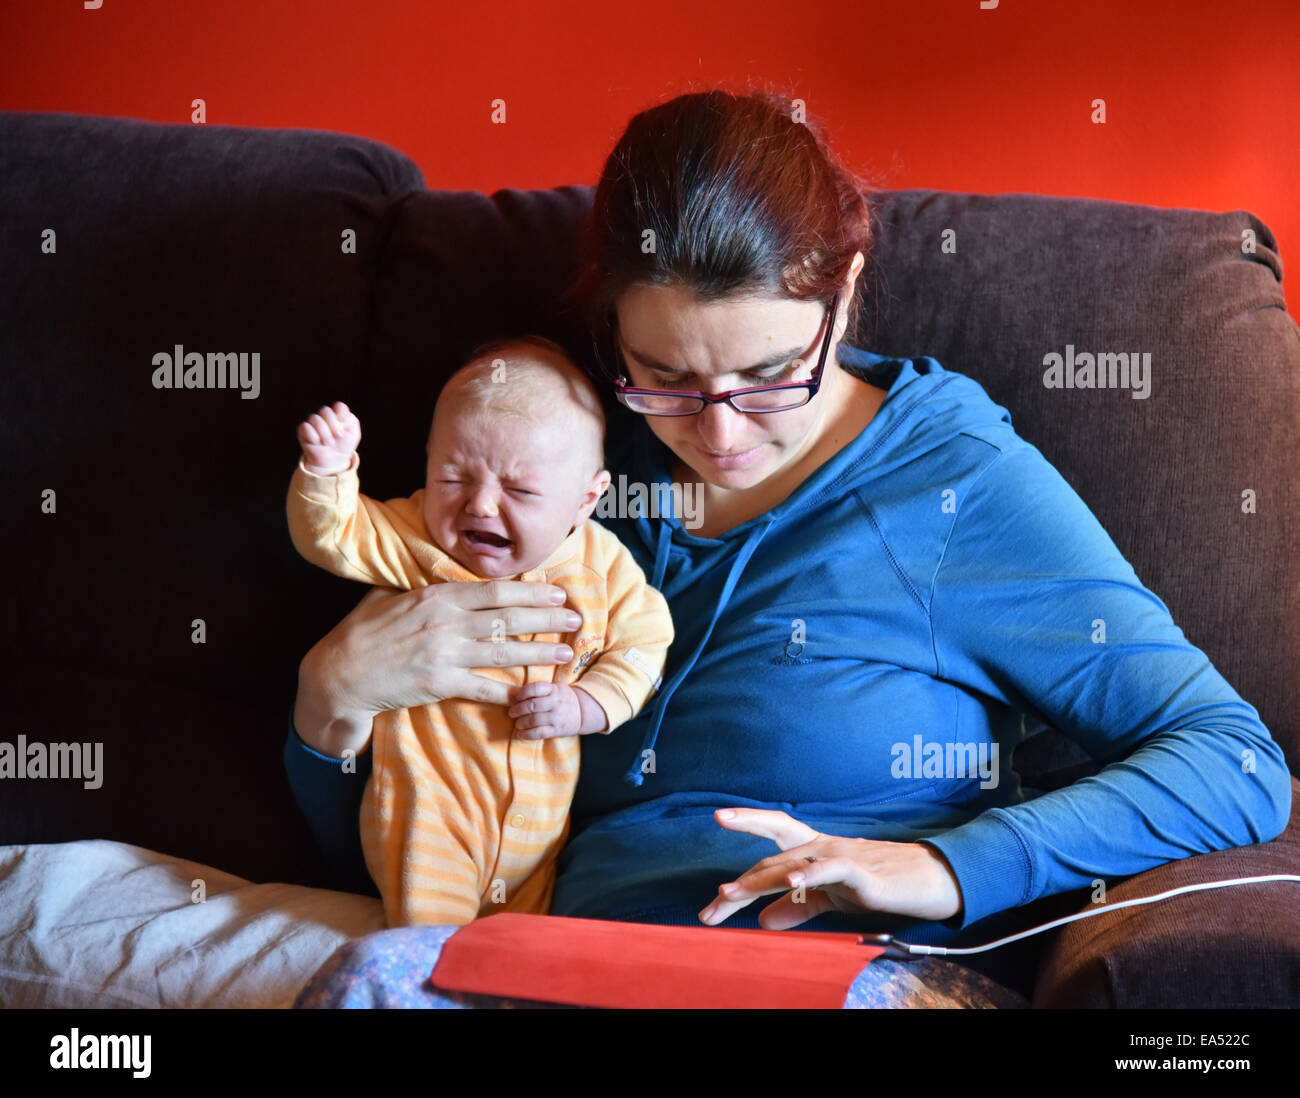 Une mère en pyjama à l'aide d'un ipad et d'ignorer son bébé qui pleure Banque D'Images